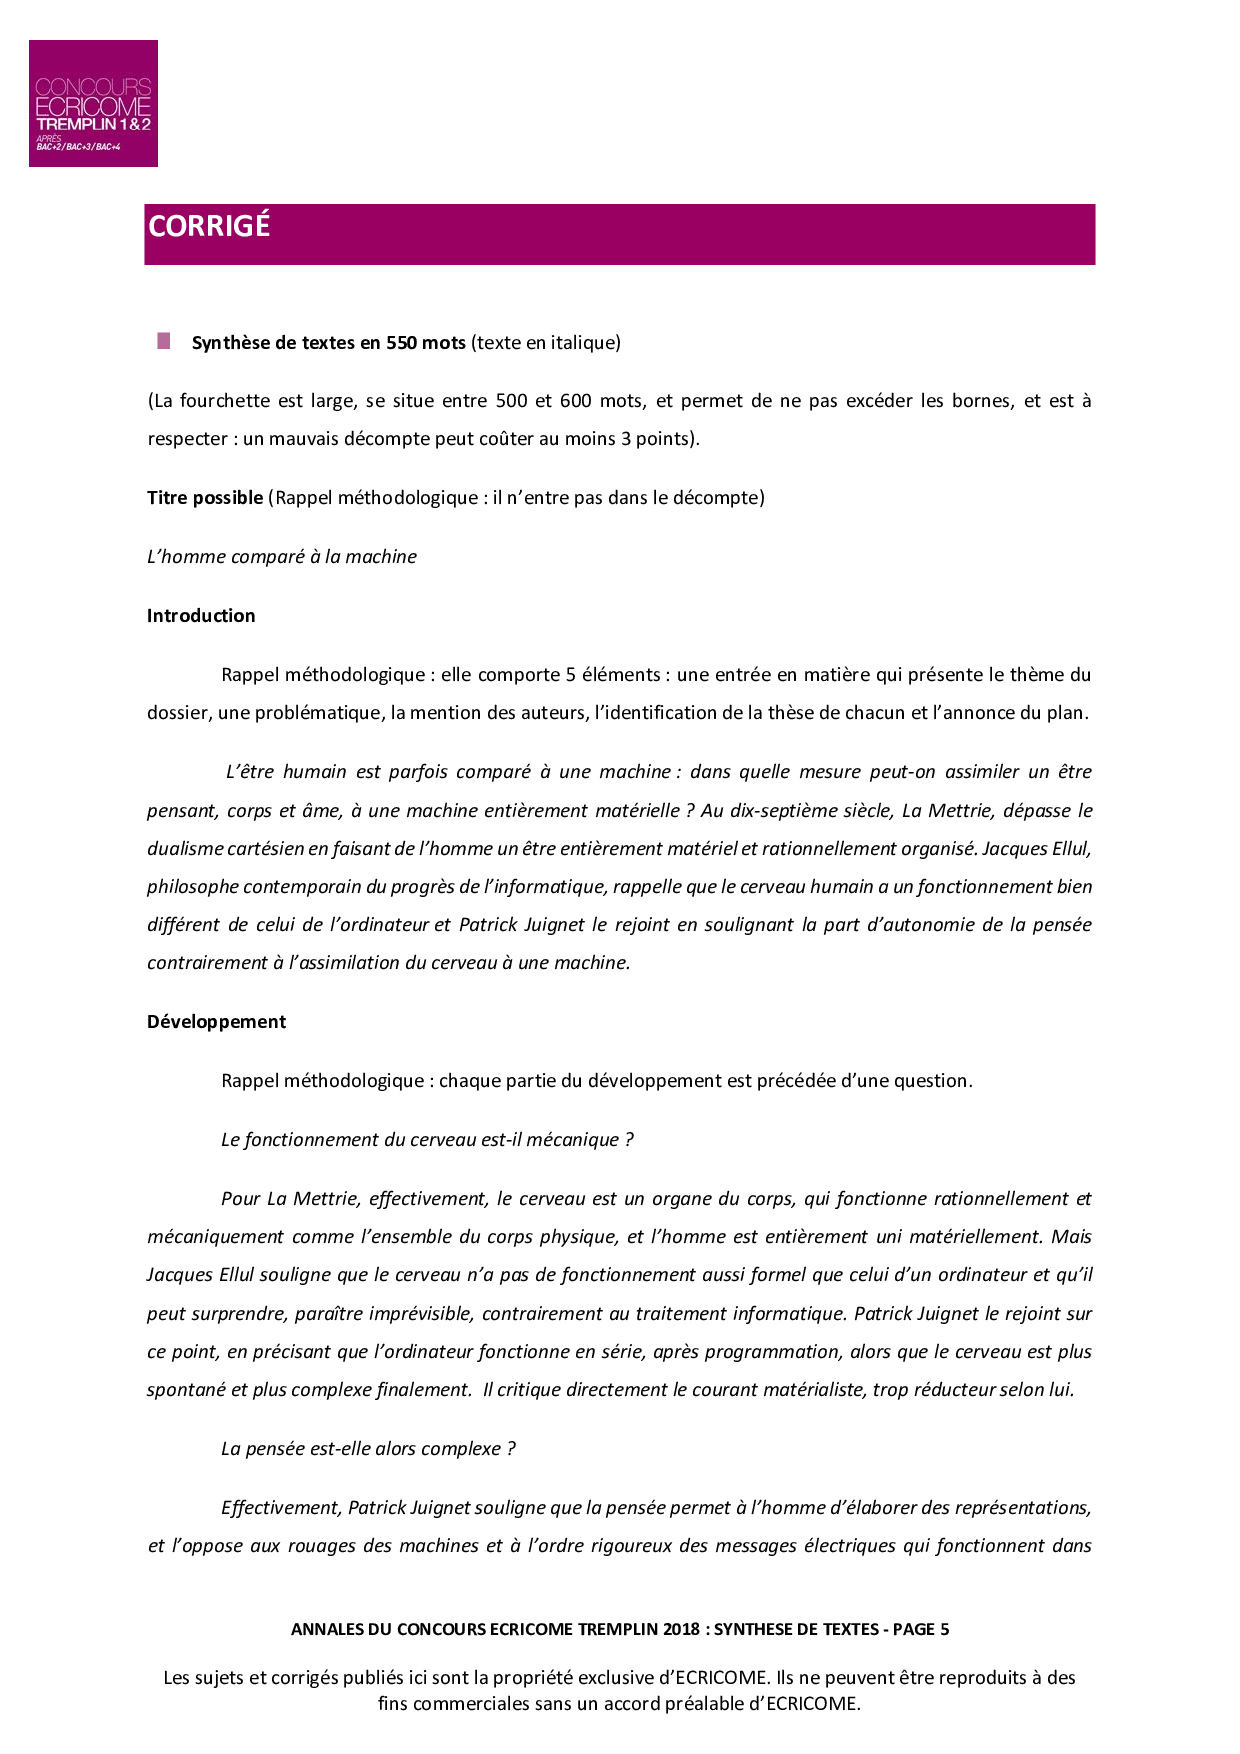 assignment document en francais